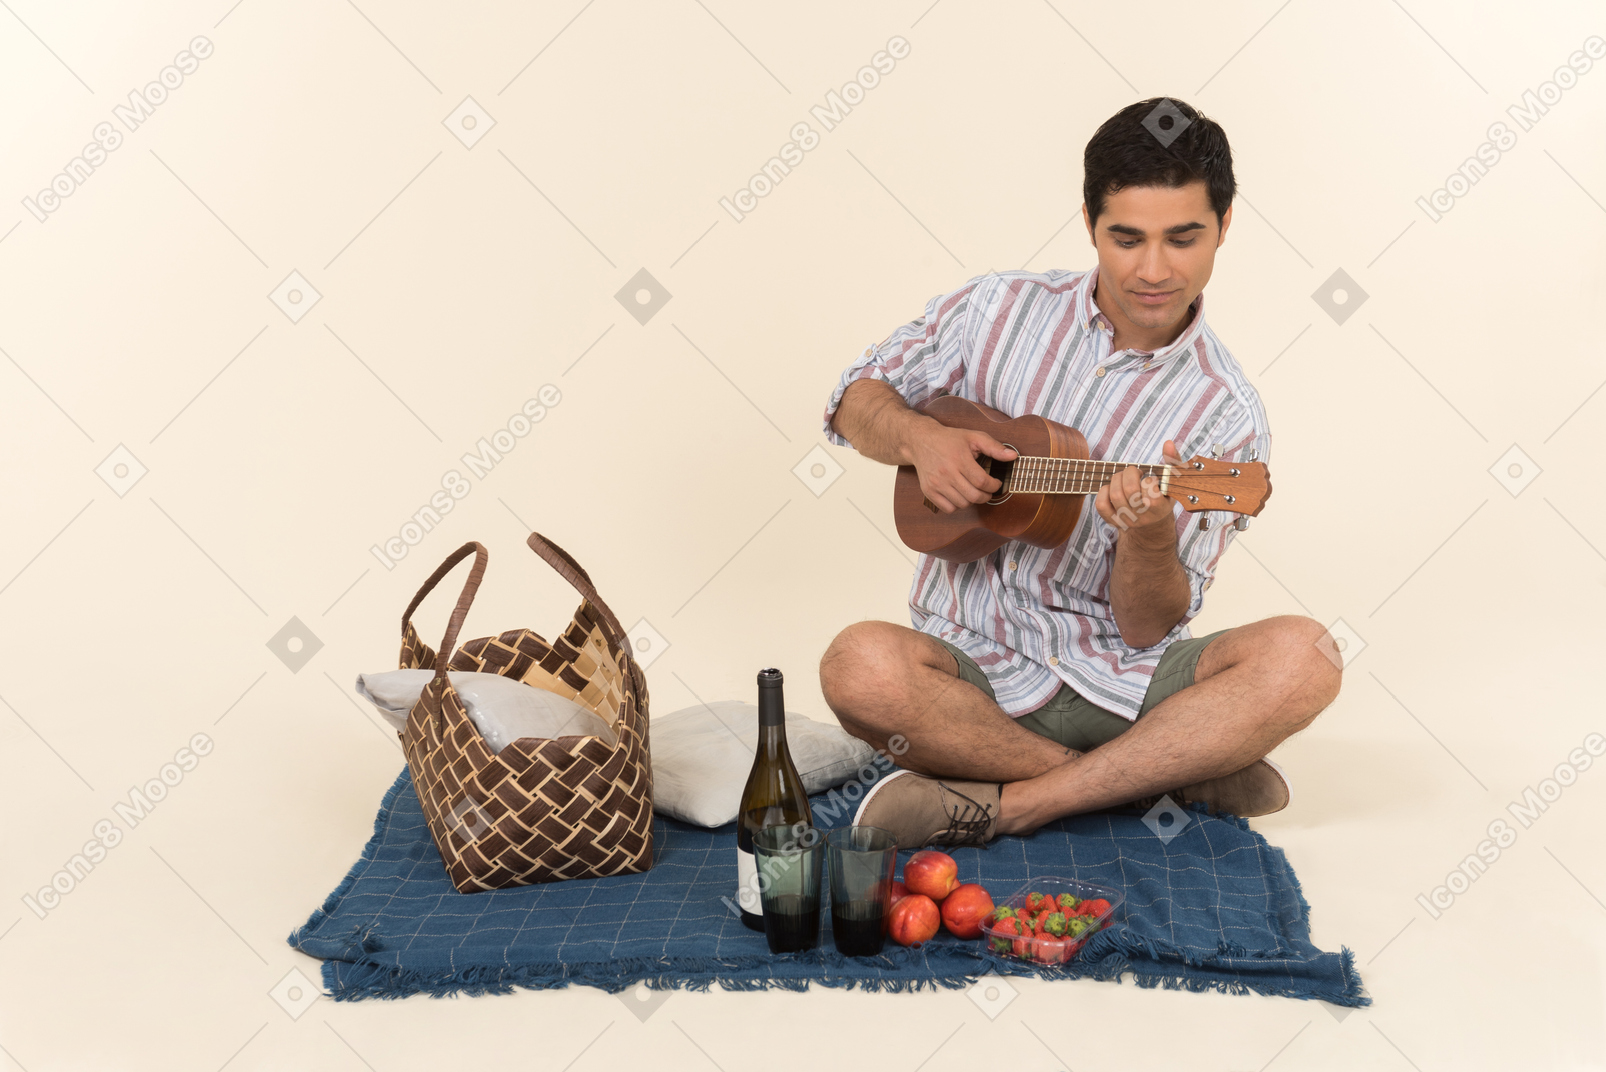 一个男人玩夏威夷四弦琴